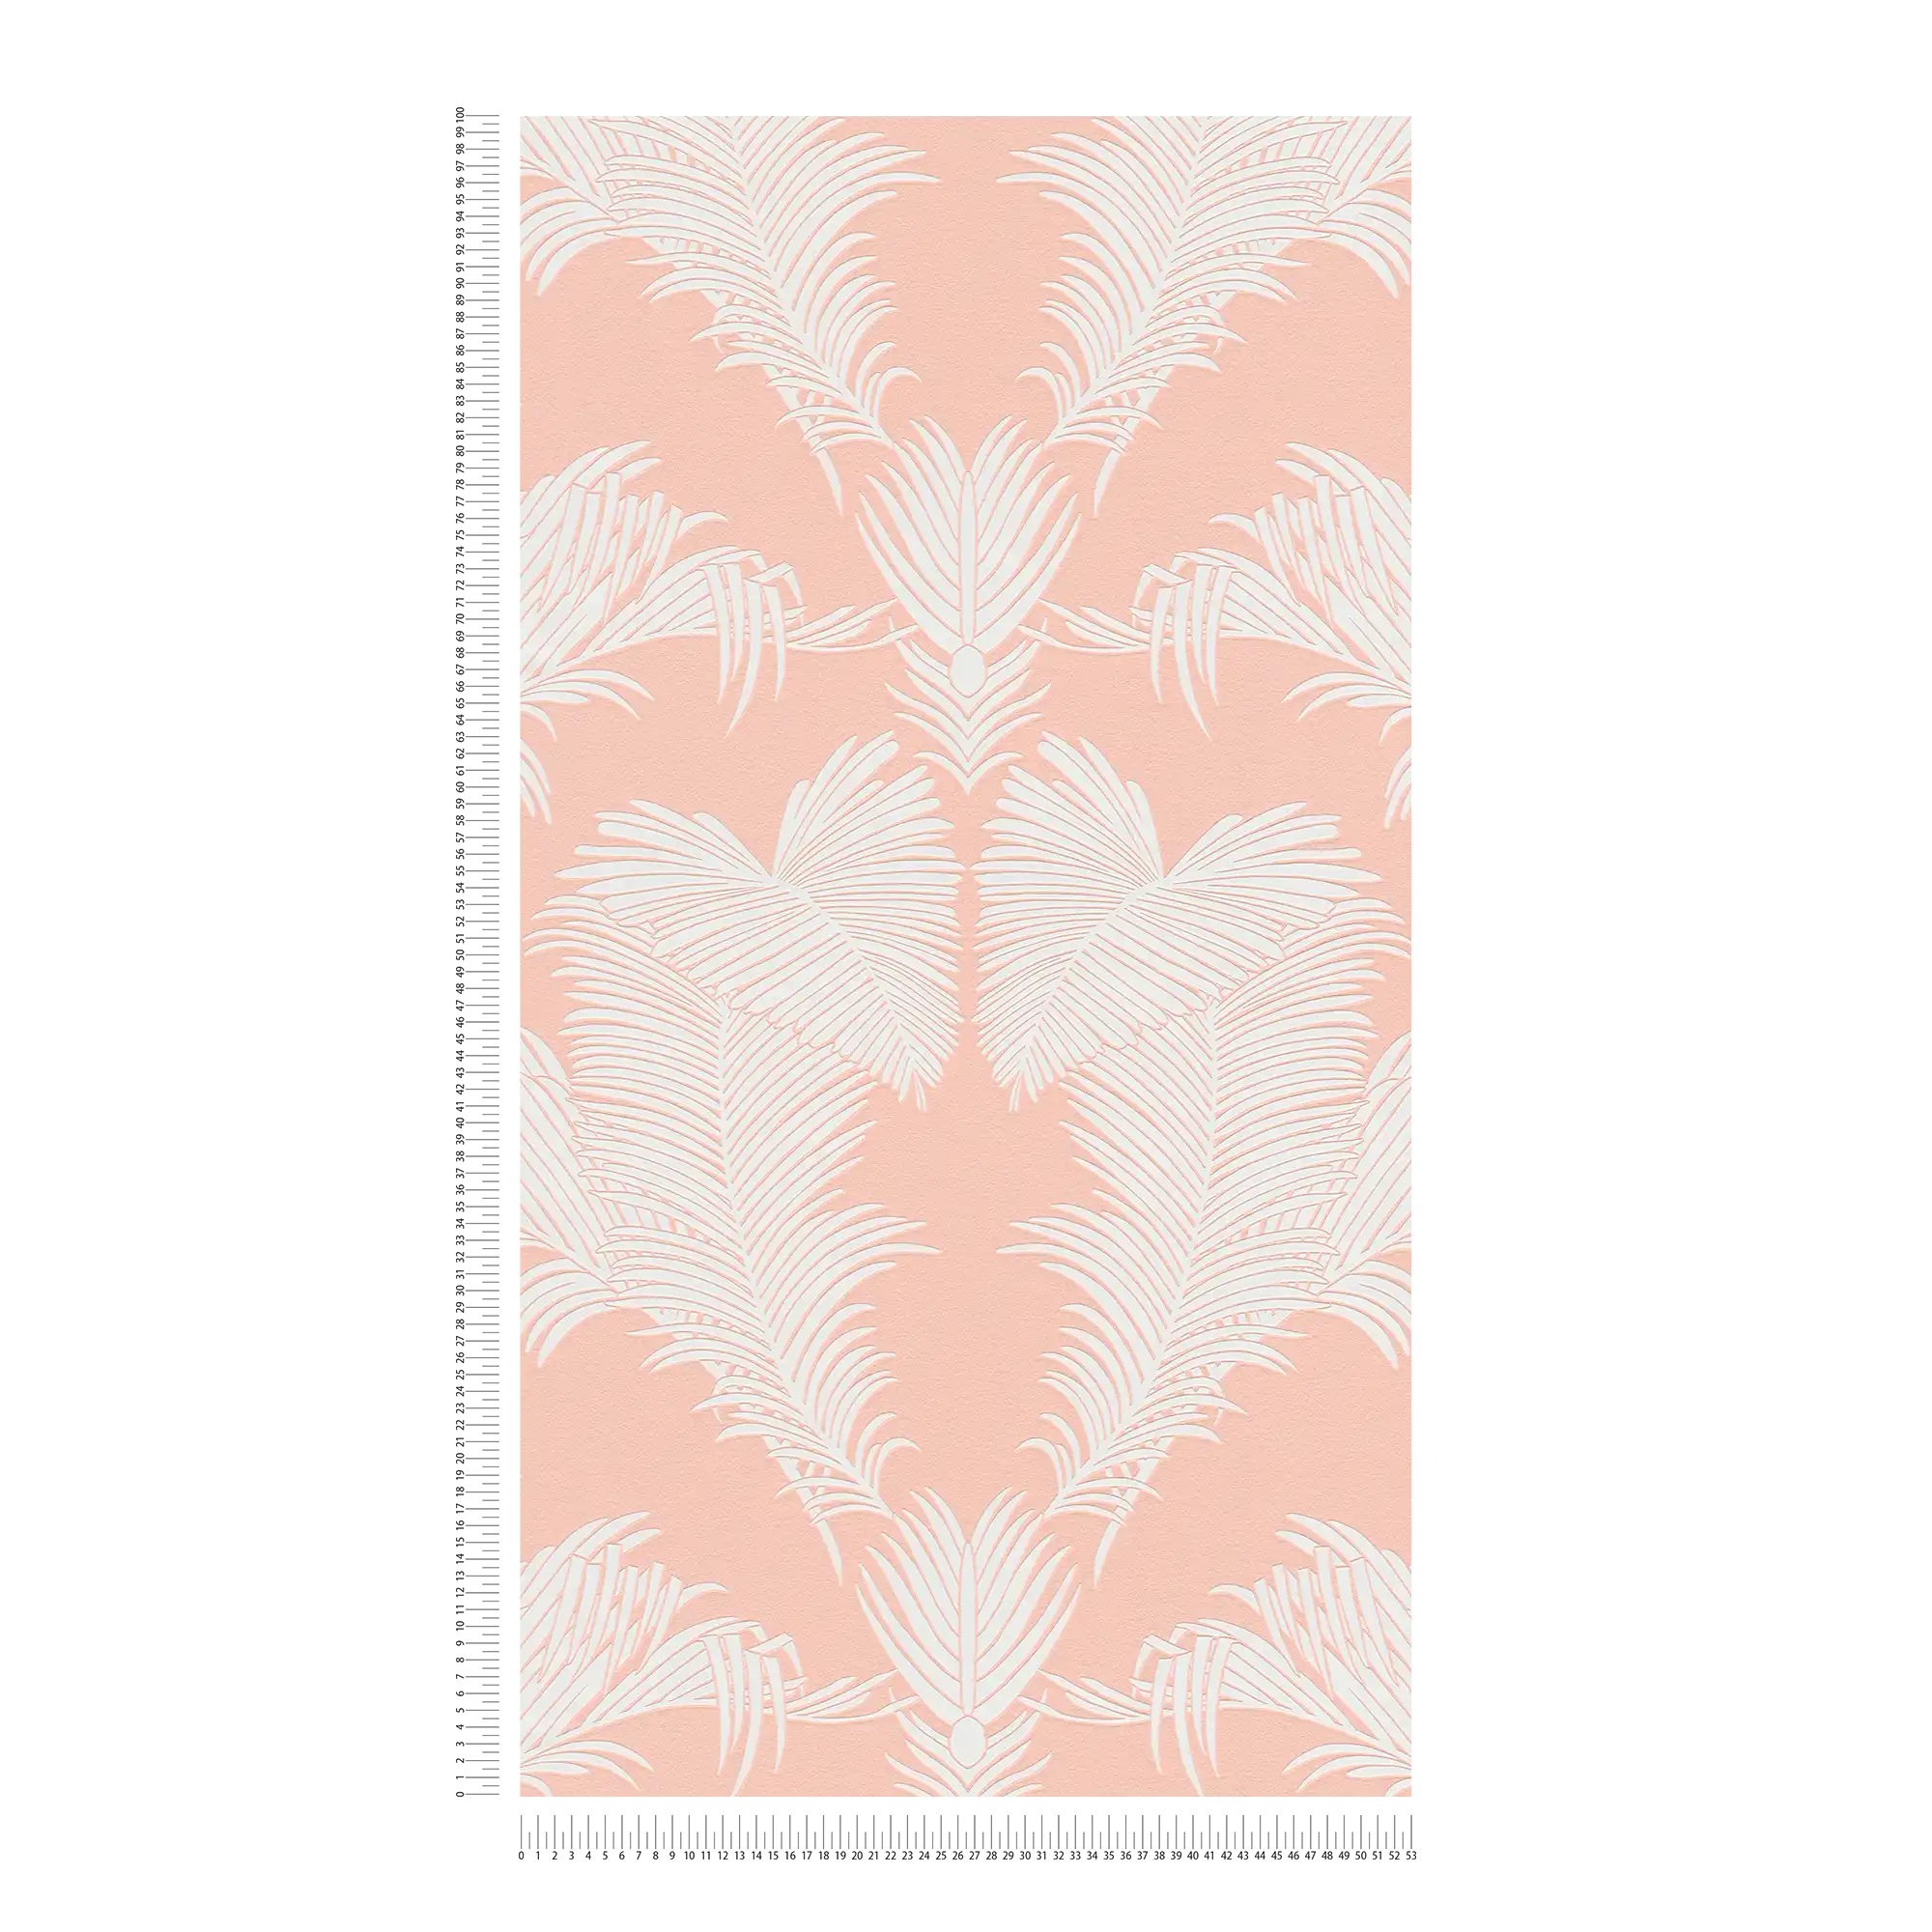             Roze behang met palmbladmotief & structuur reliëf - roze, wit
        